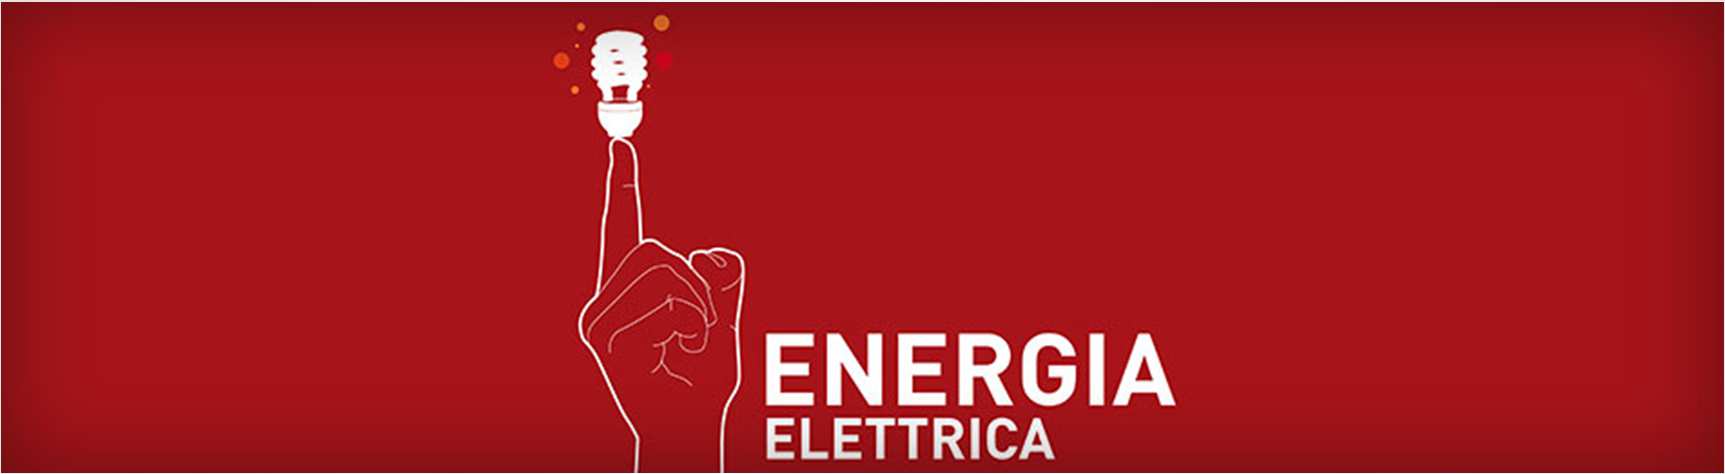 ENERGIA ELETTRICA Energid è il primo operatore indipendente nella vendita di energia elettrica sul mercato italiano.